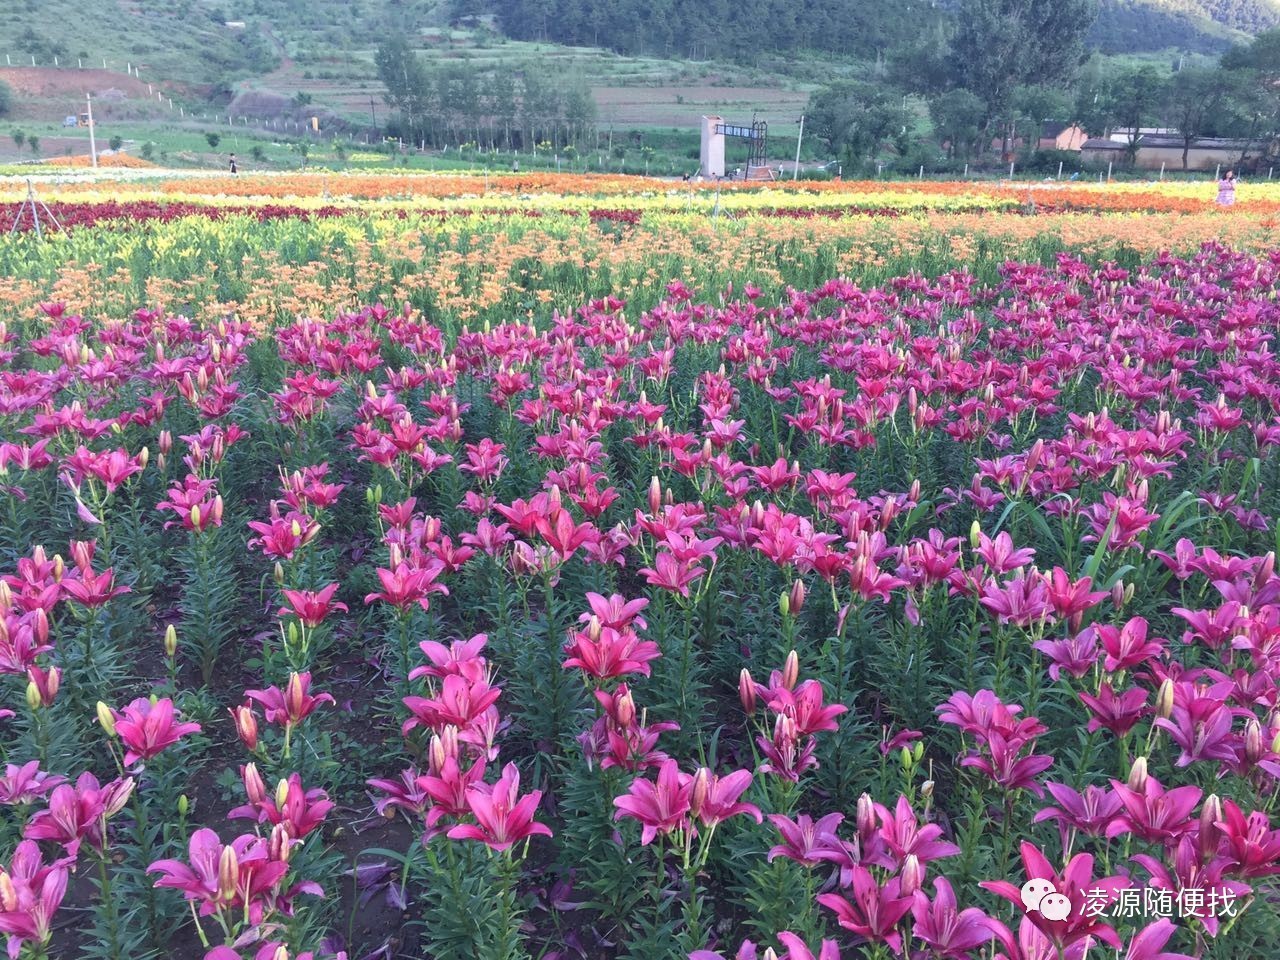 红石野谷 - 中国国家地理最美观景拍摄点